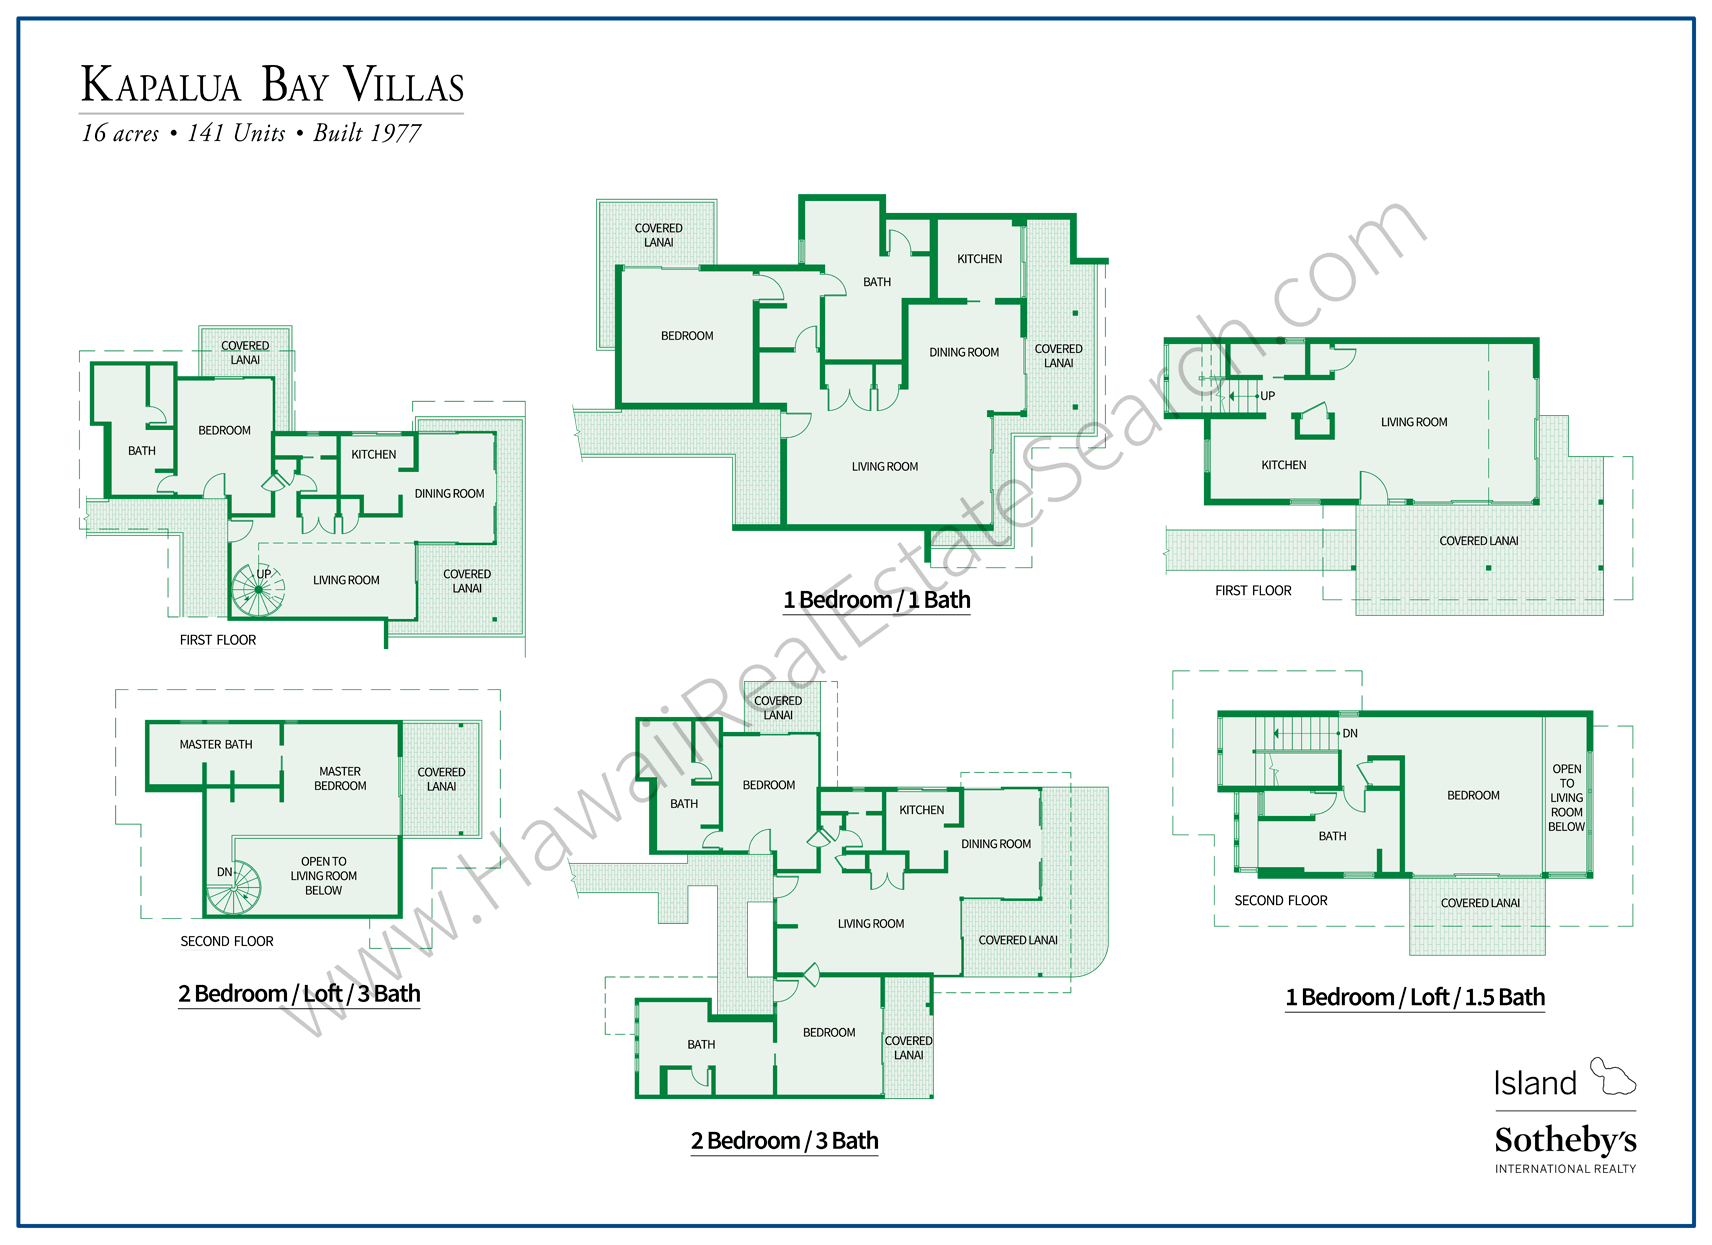 Kapalua Bay Villas Floor Plans Updated